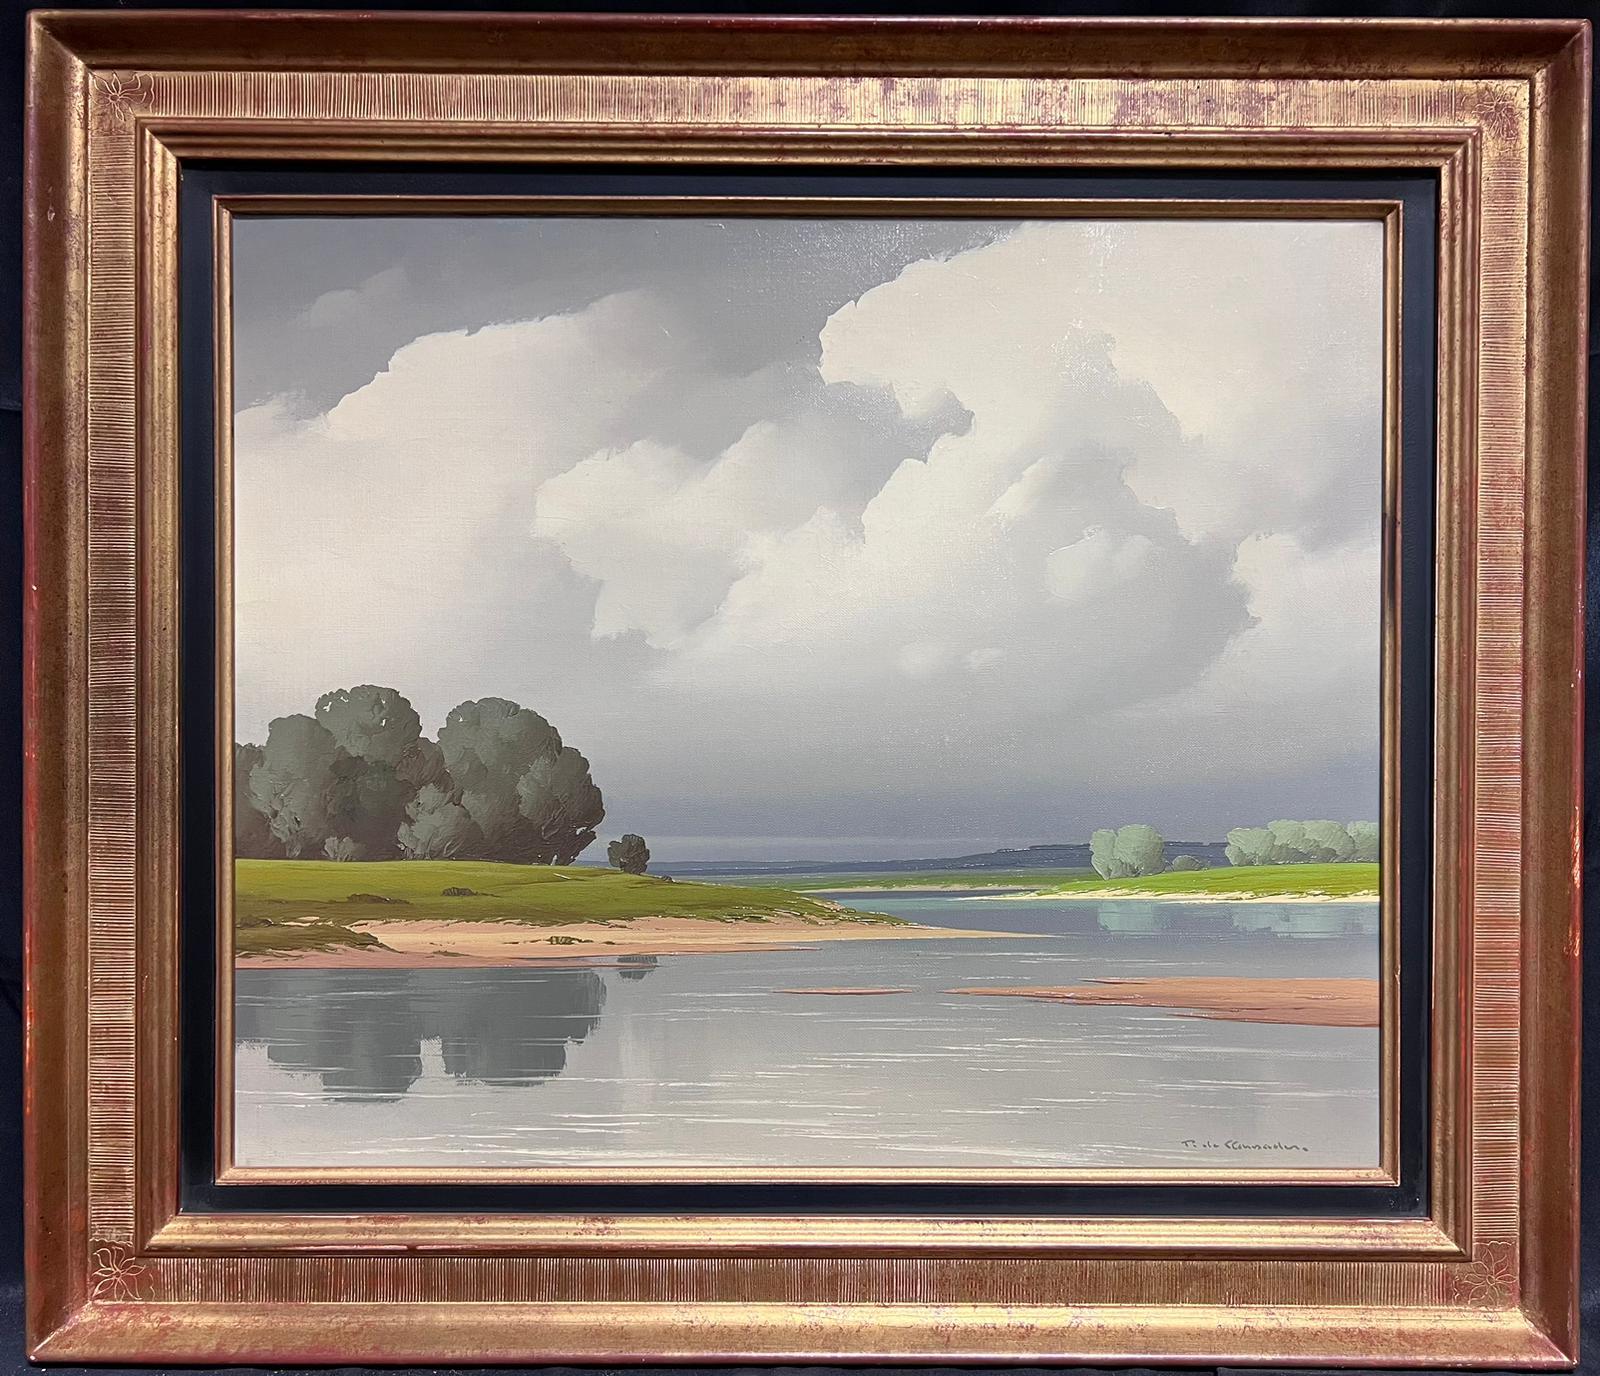 Pierre de Clausade Landscape Painting - Famous French Artist Loire Valley Atmospheric Landscape Original Oil Painting